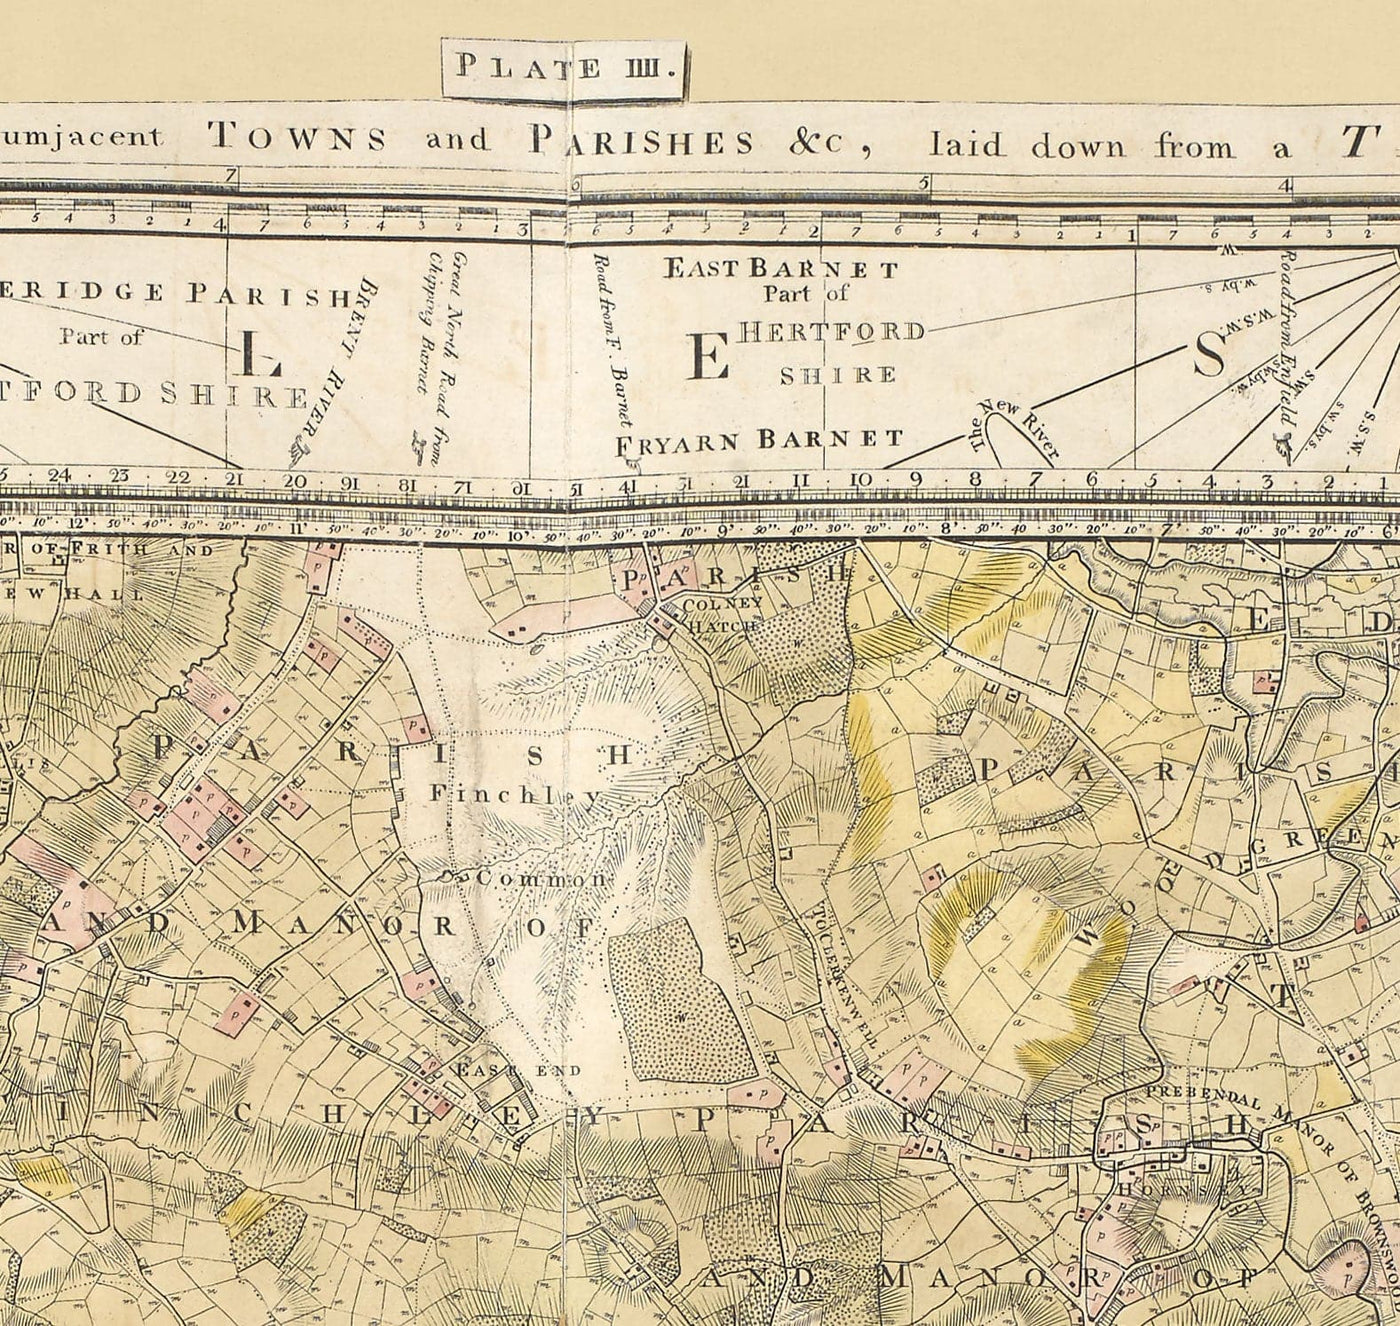 Mapa antiguo raro de Londres y suburbios, 1799 por Milne - Ciudad, Hackney, Westminster, Dalston, Hampstead, Campos